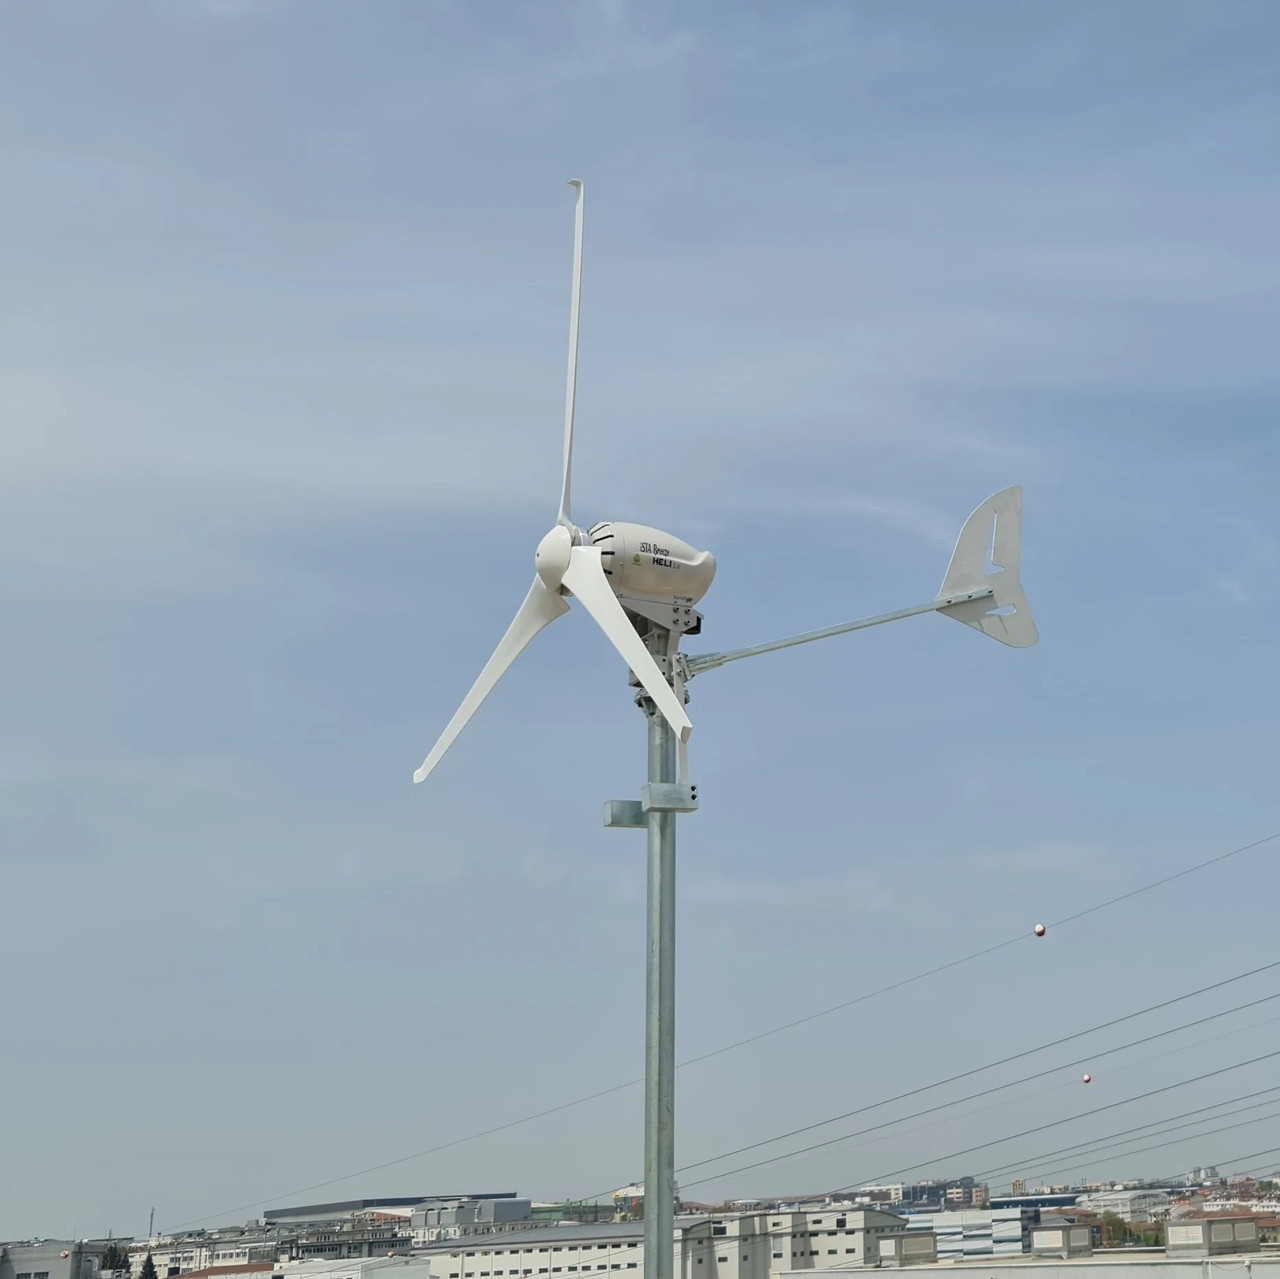 AC Ausgang 2KW 48V 96V 110V 120V 220V 230V 240V Wind Turbine Wind generator  Wind Mühle Energie